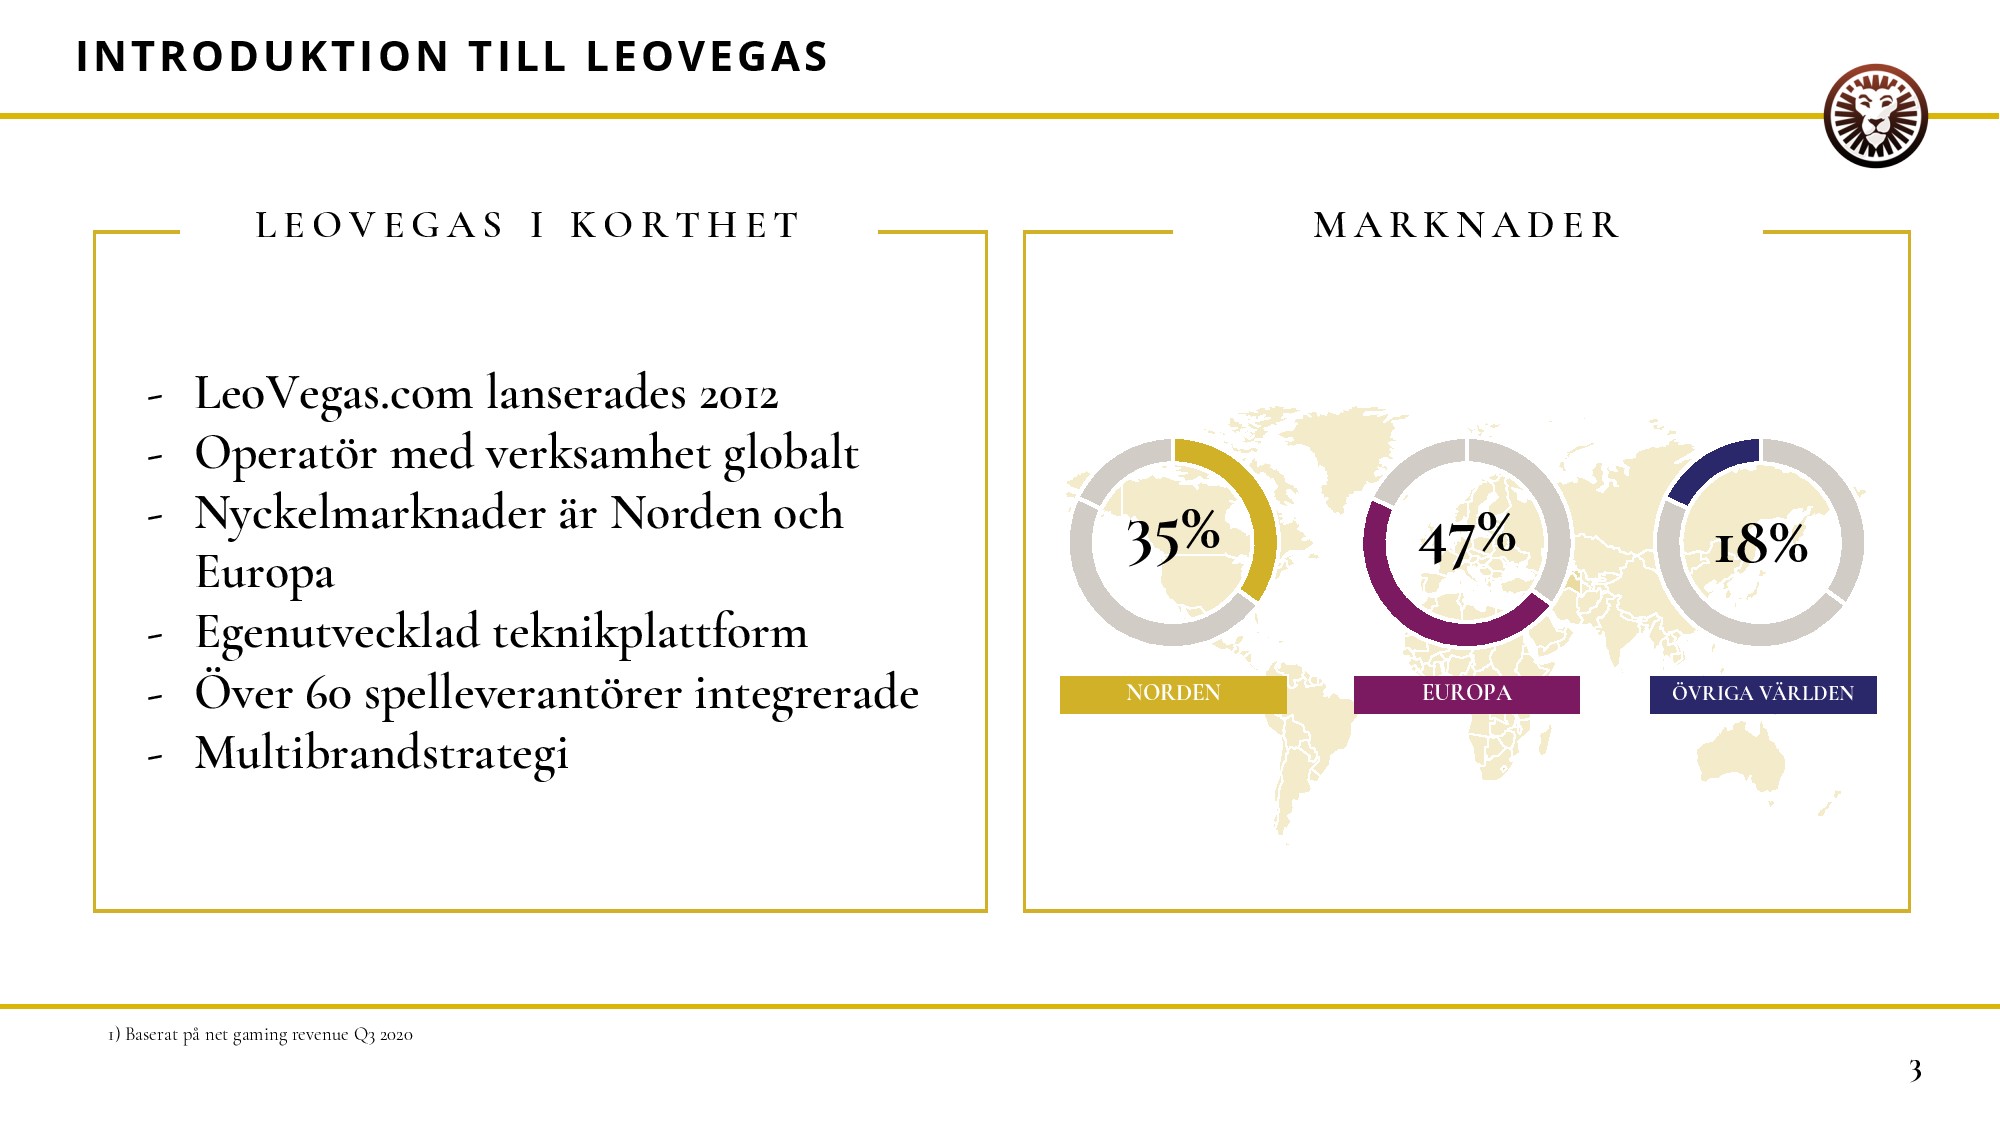 Leovegas Svenska Logga In